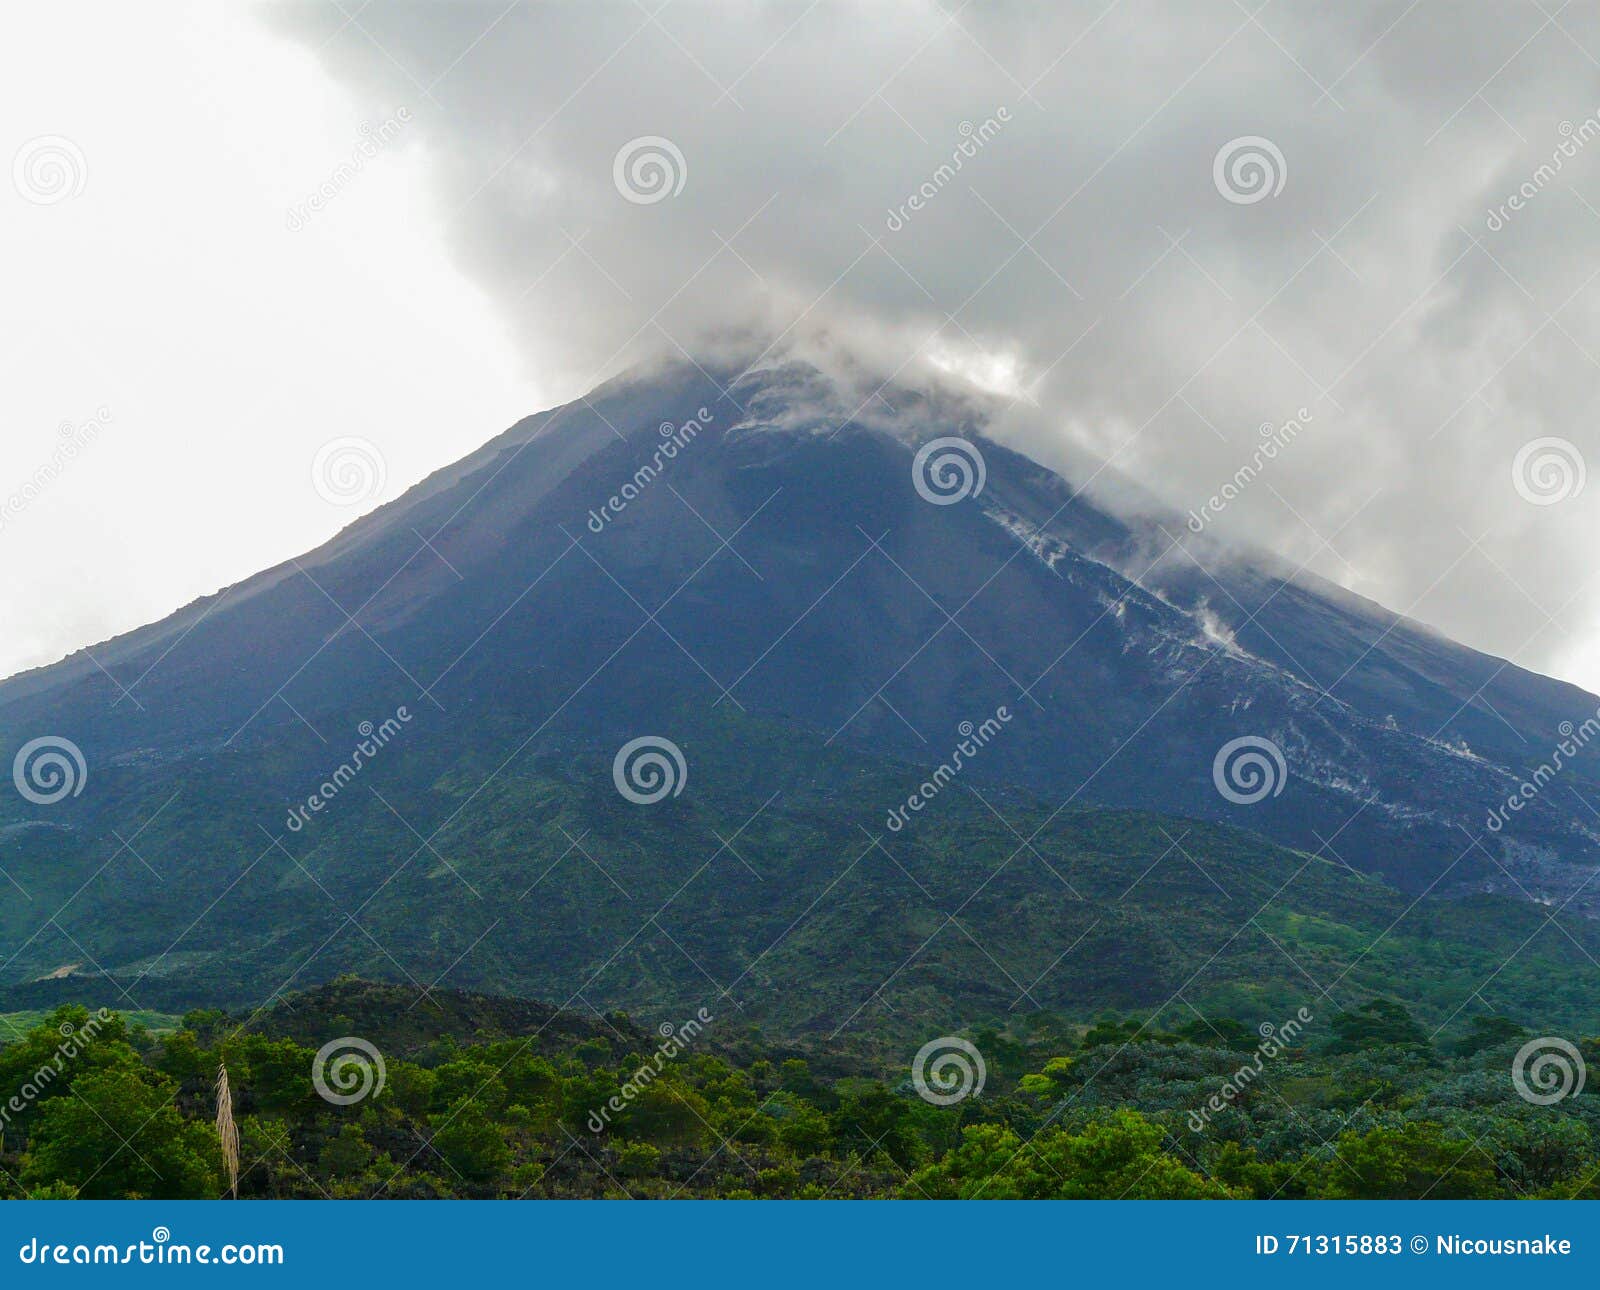 阿雷纳尔火山是哥斯达黎加的活火山